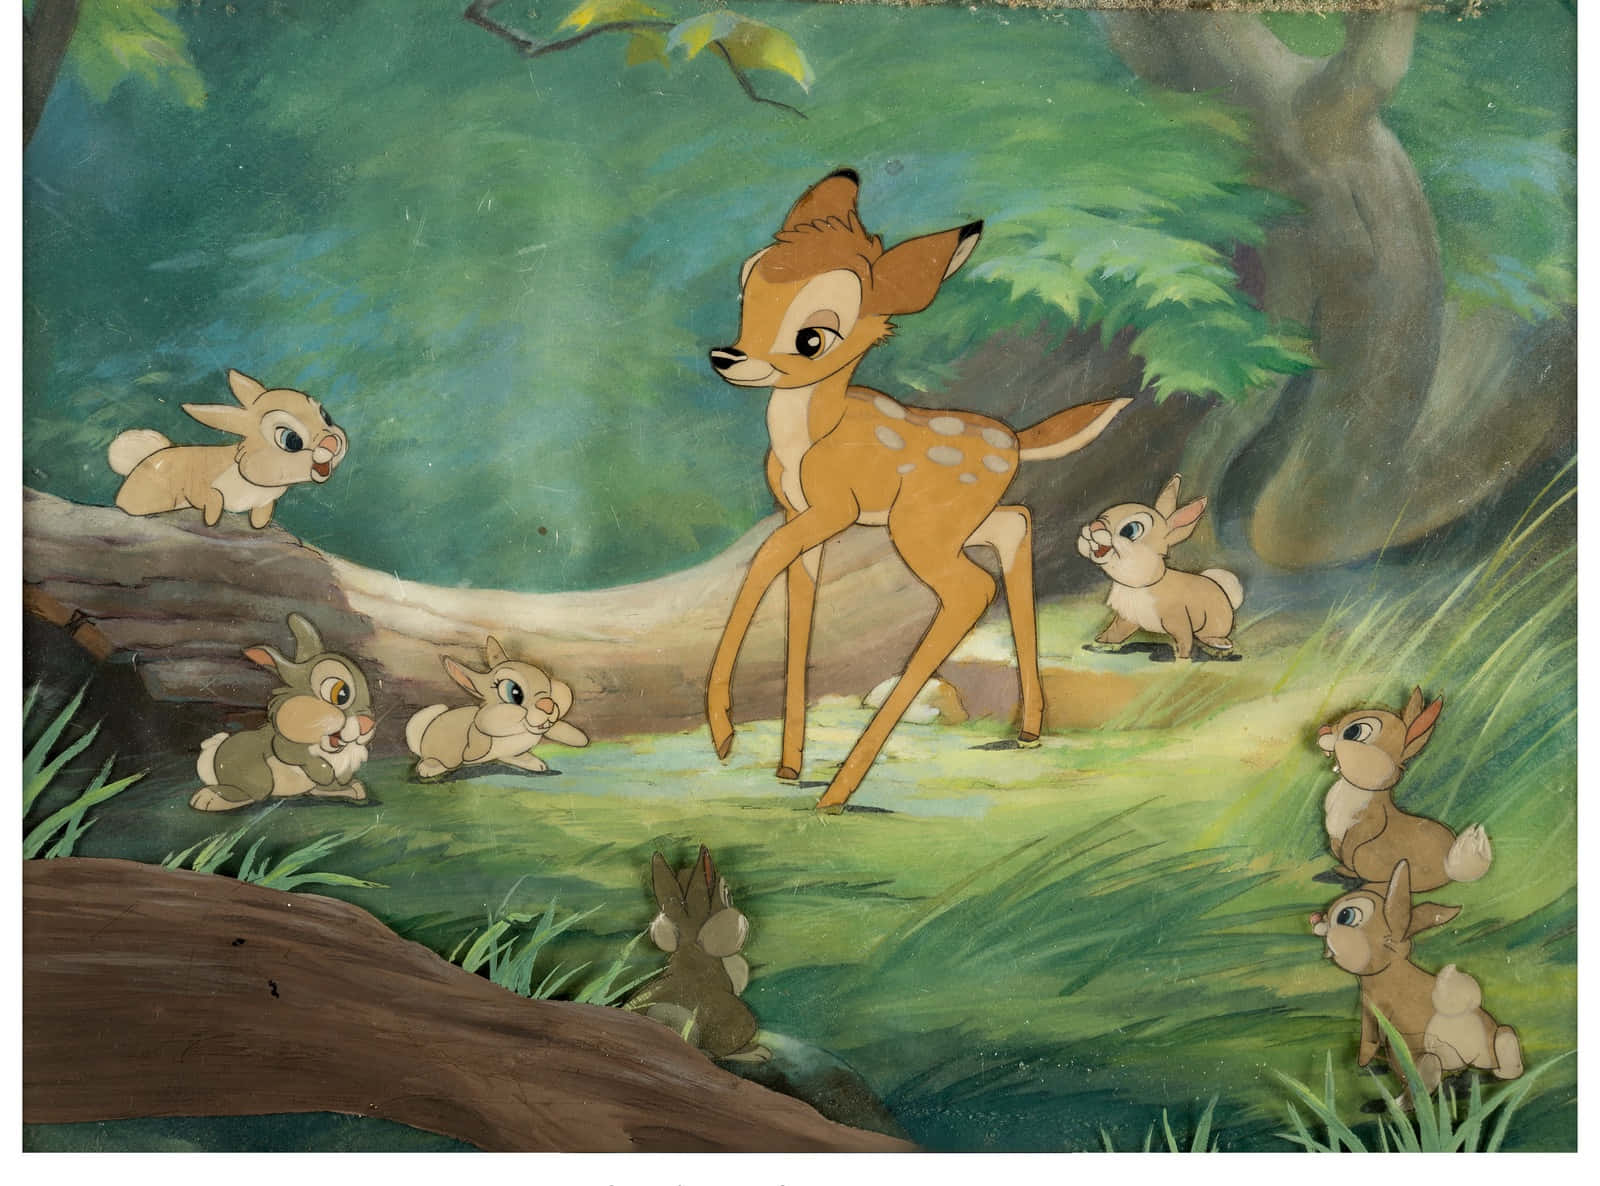 Enälskad Disney-karaktär, Bambi, Sitter På En Gren I Skogen.